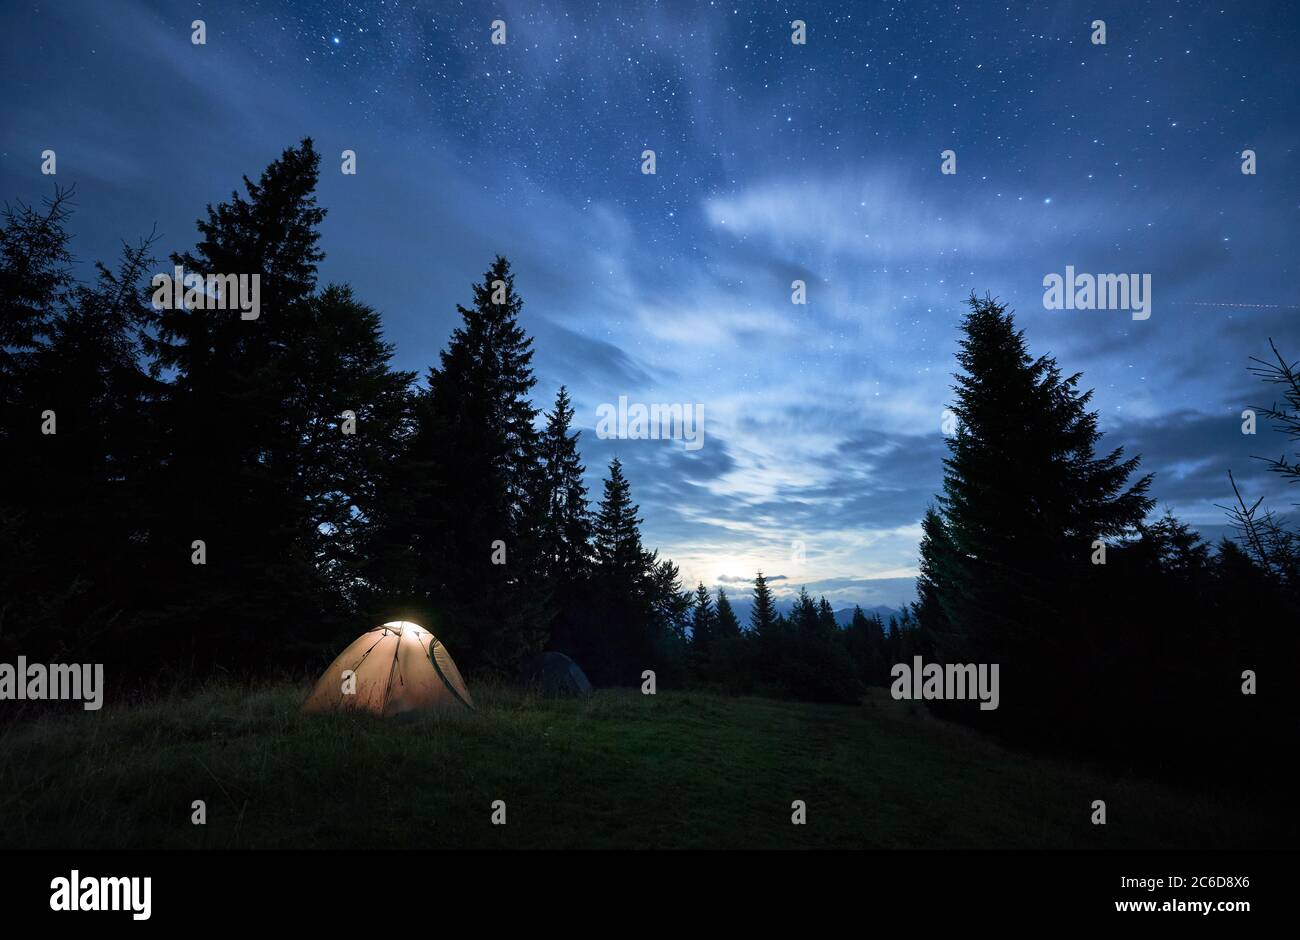 Télescope Réflecteur Sur Un Trépied Tente De Camping Touristique La Nuit  Sous Ciel étoilé Photo stock - Image du constellation, astronomique:  218744204